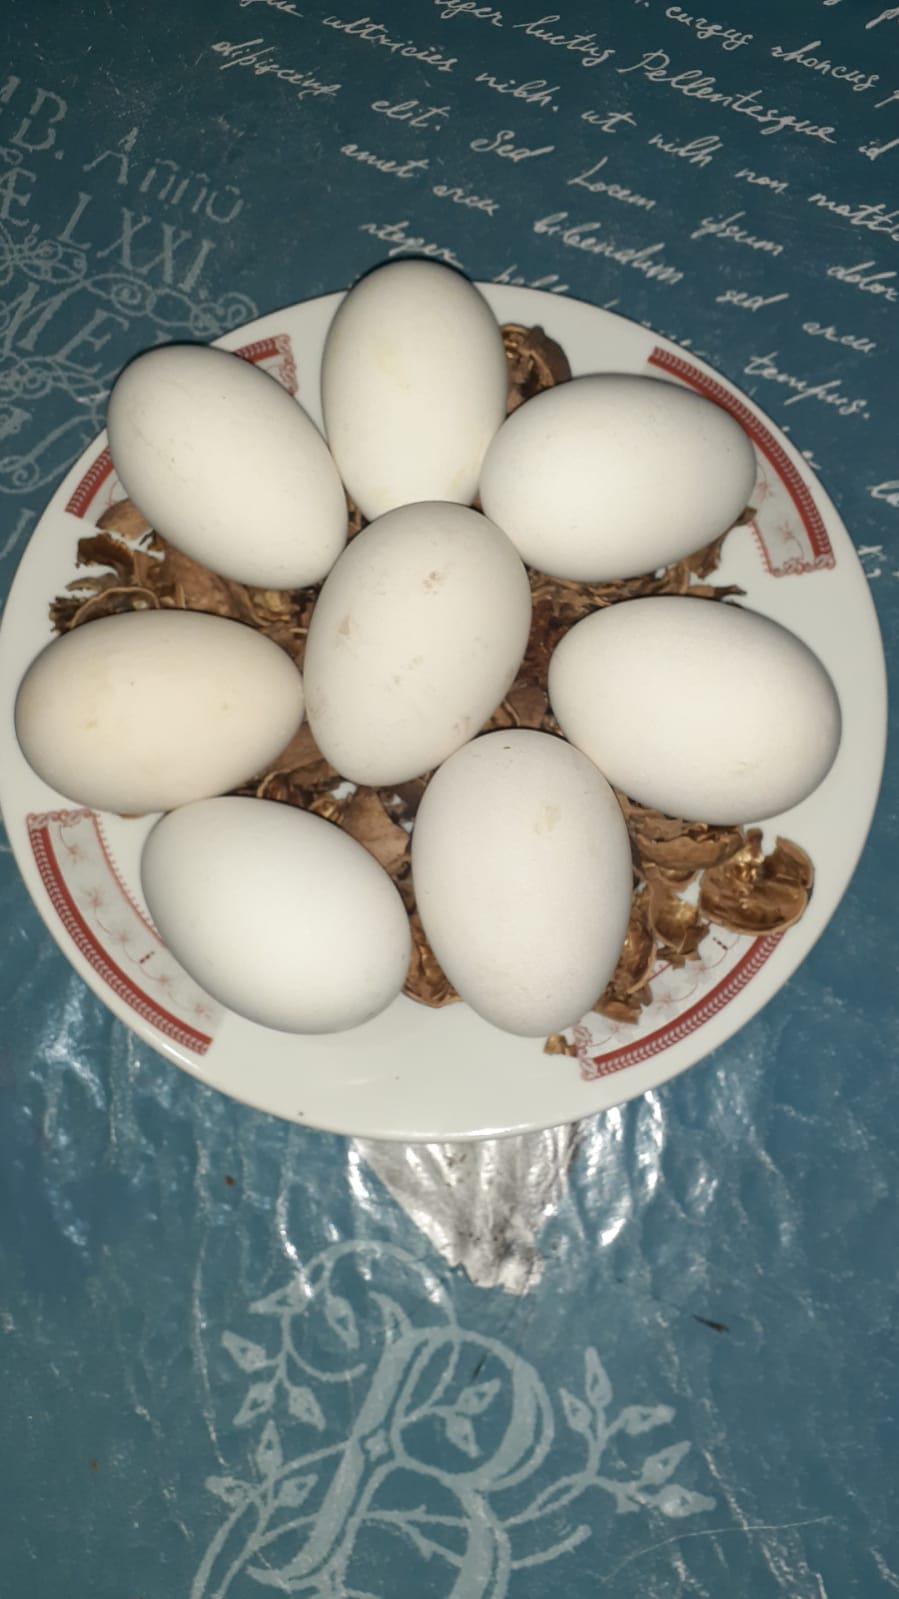 Kaz yumurtası - Üretici Gül Aydın Yilmaz 20 tl fiyat ile 40 adet kaz yumurtası  satmak istiyor